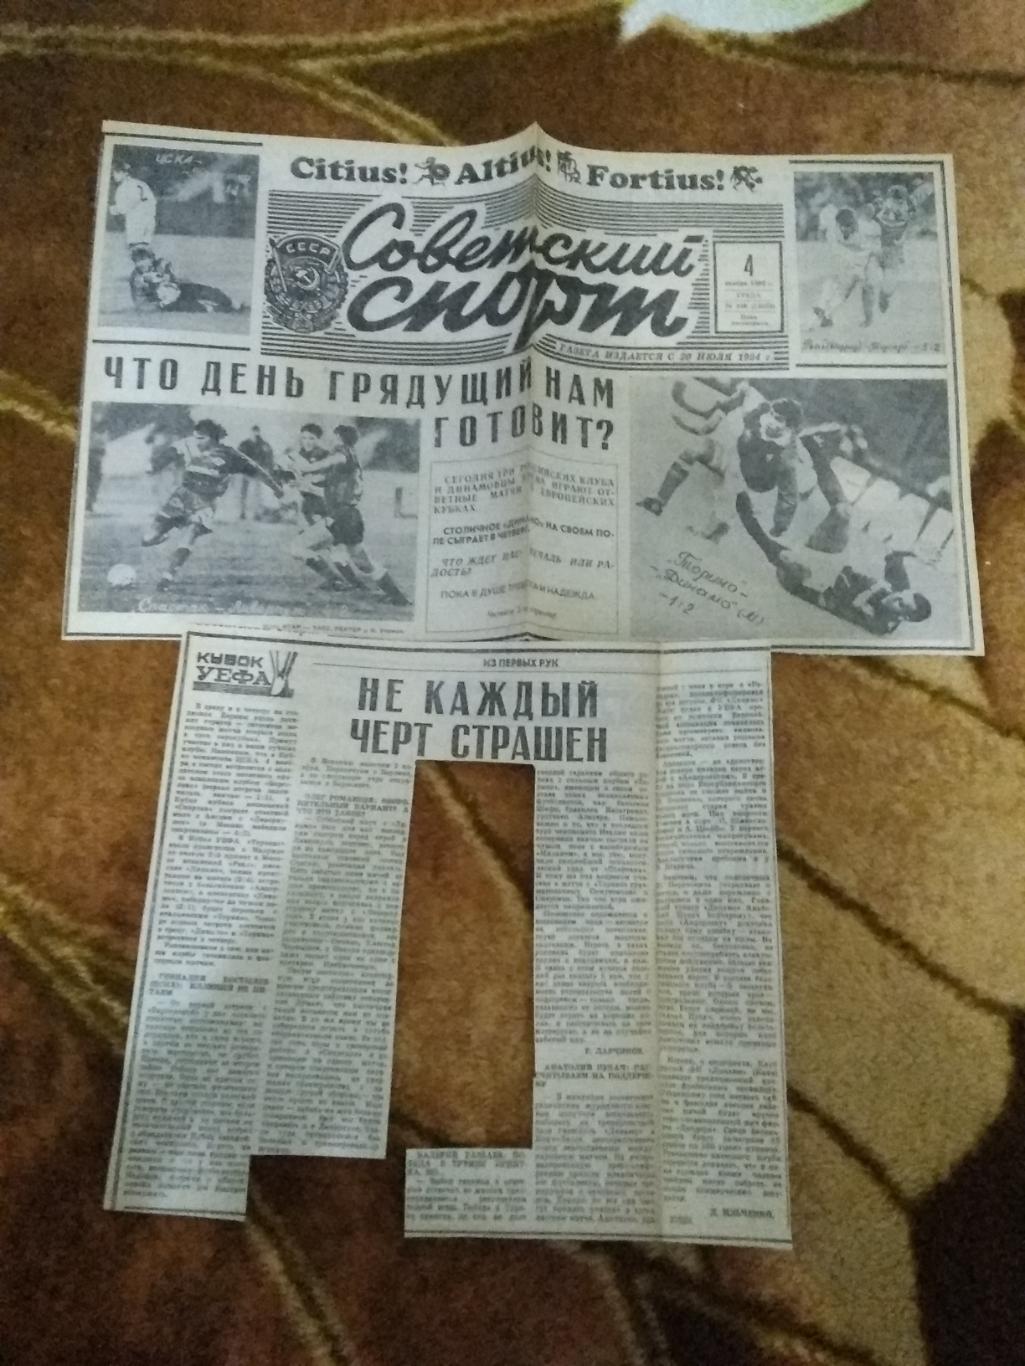 ЕК.Футбол.Клубы СНГ/СССР 1992-1993 г. Советский спорт. 3